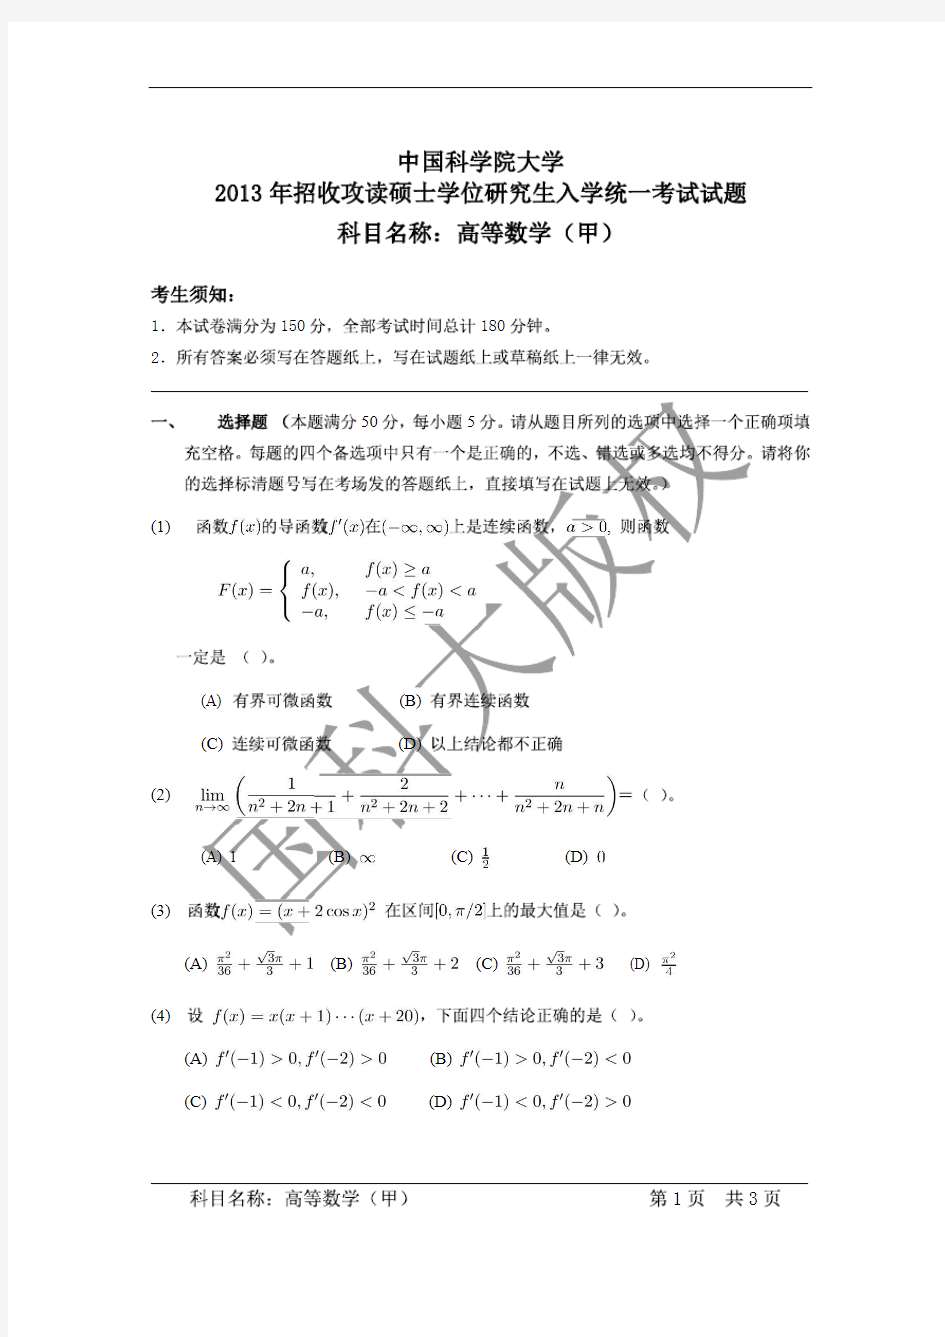 中国科学院大学2013年《高等数学(甲)》考研专业课真题试卷